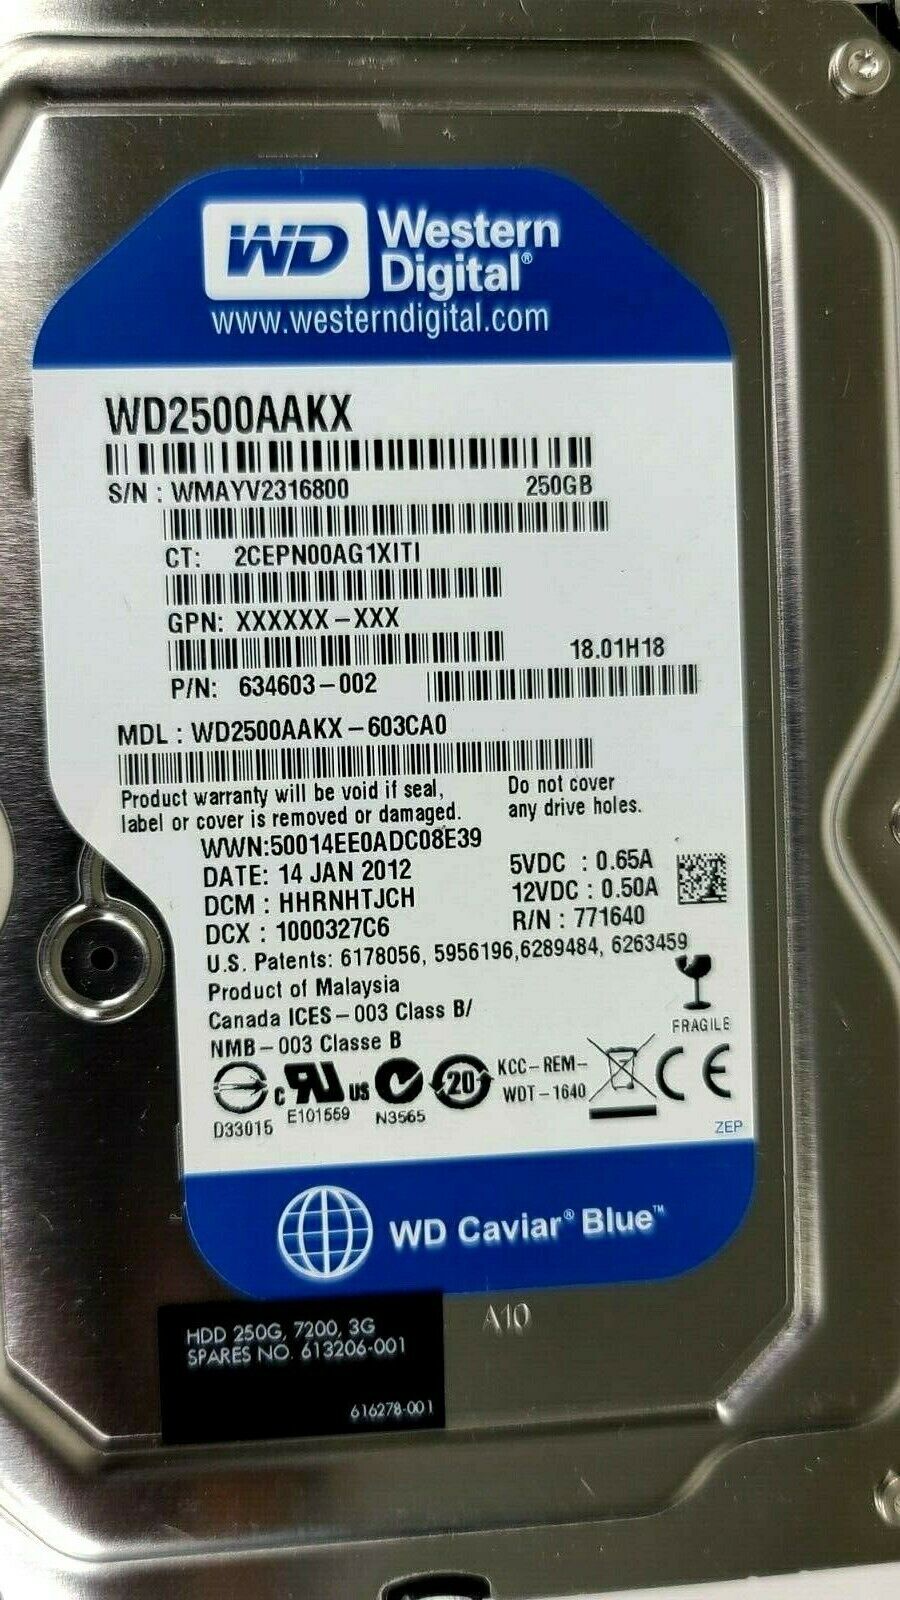 Lot of 9 Western Digital WD2500AAKX-603CA0 Caviar Blue 250GB SATA 3.5" TESTED!